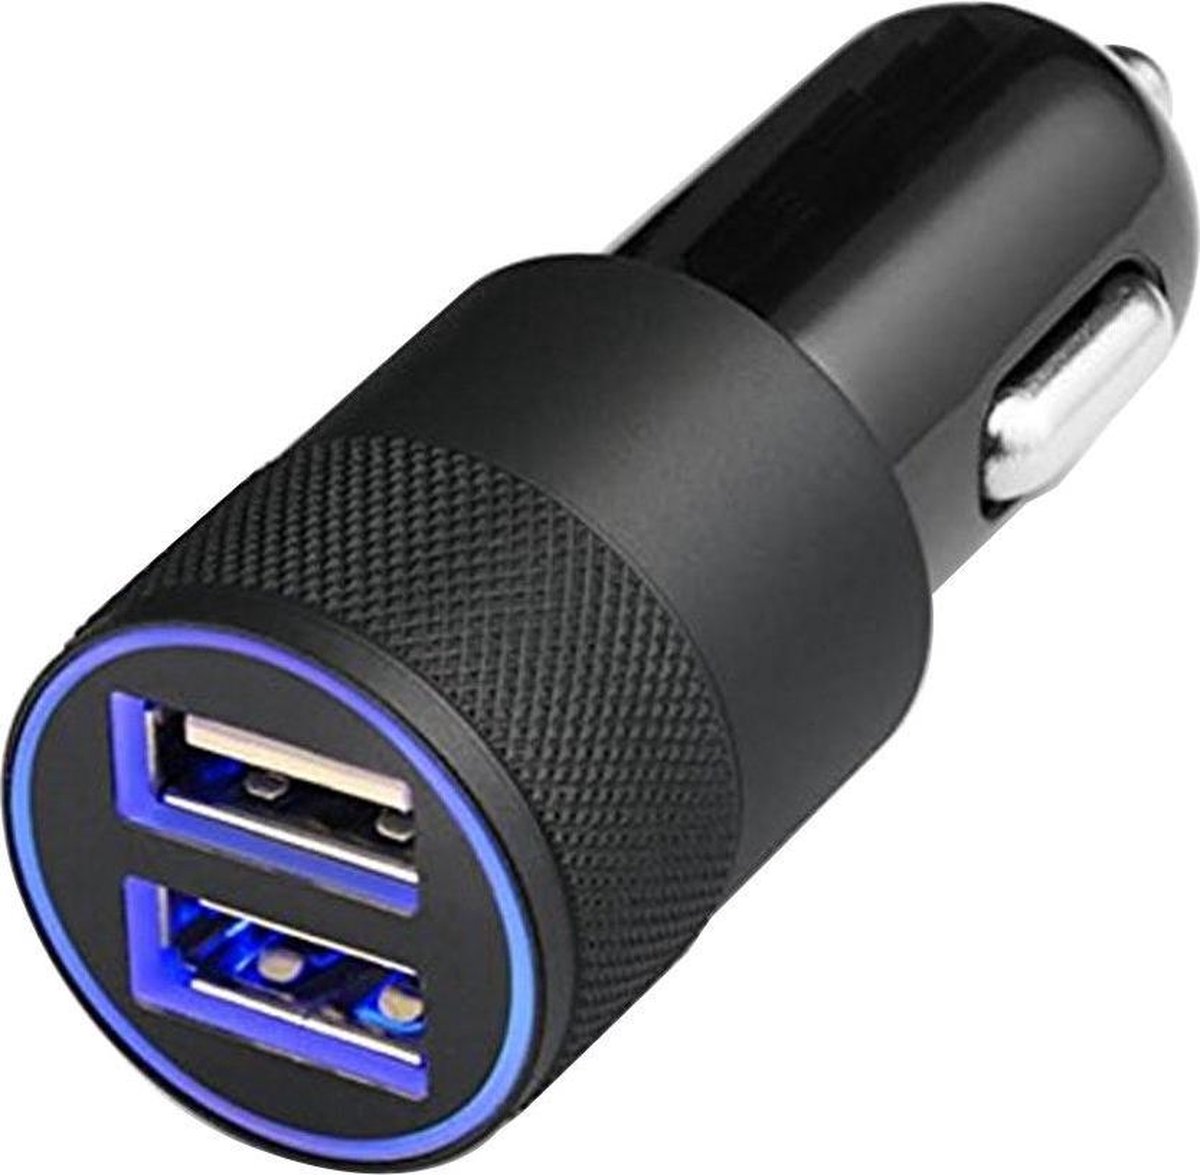 MMOBIEL Universele Autolader (ZWART) - 2 USB Poorten - 5V/1.0 + 2.1A - inclusief Blauwe LED - MMOBIEL